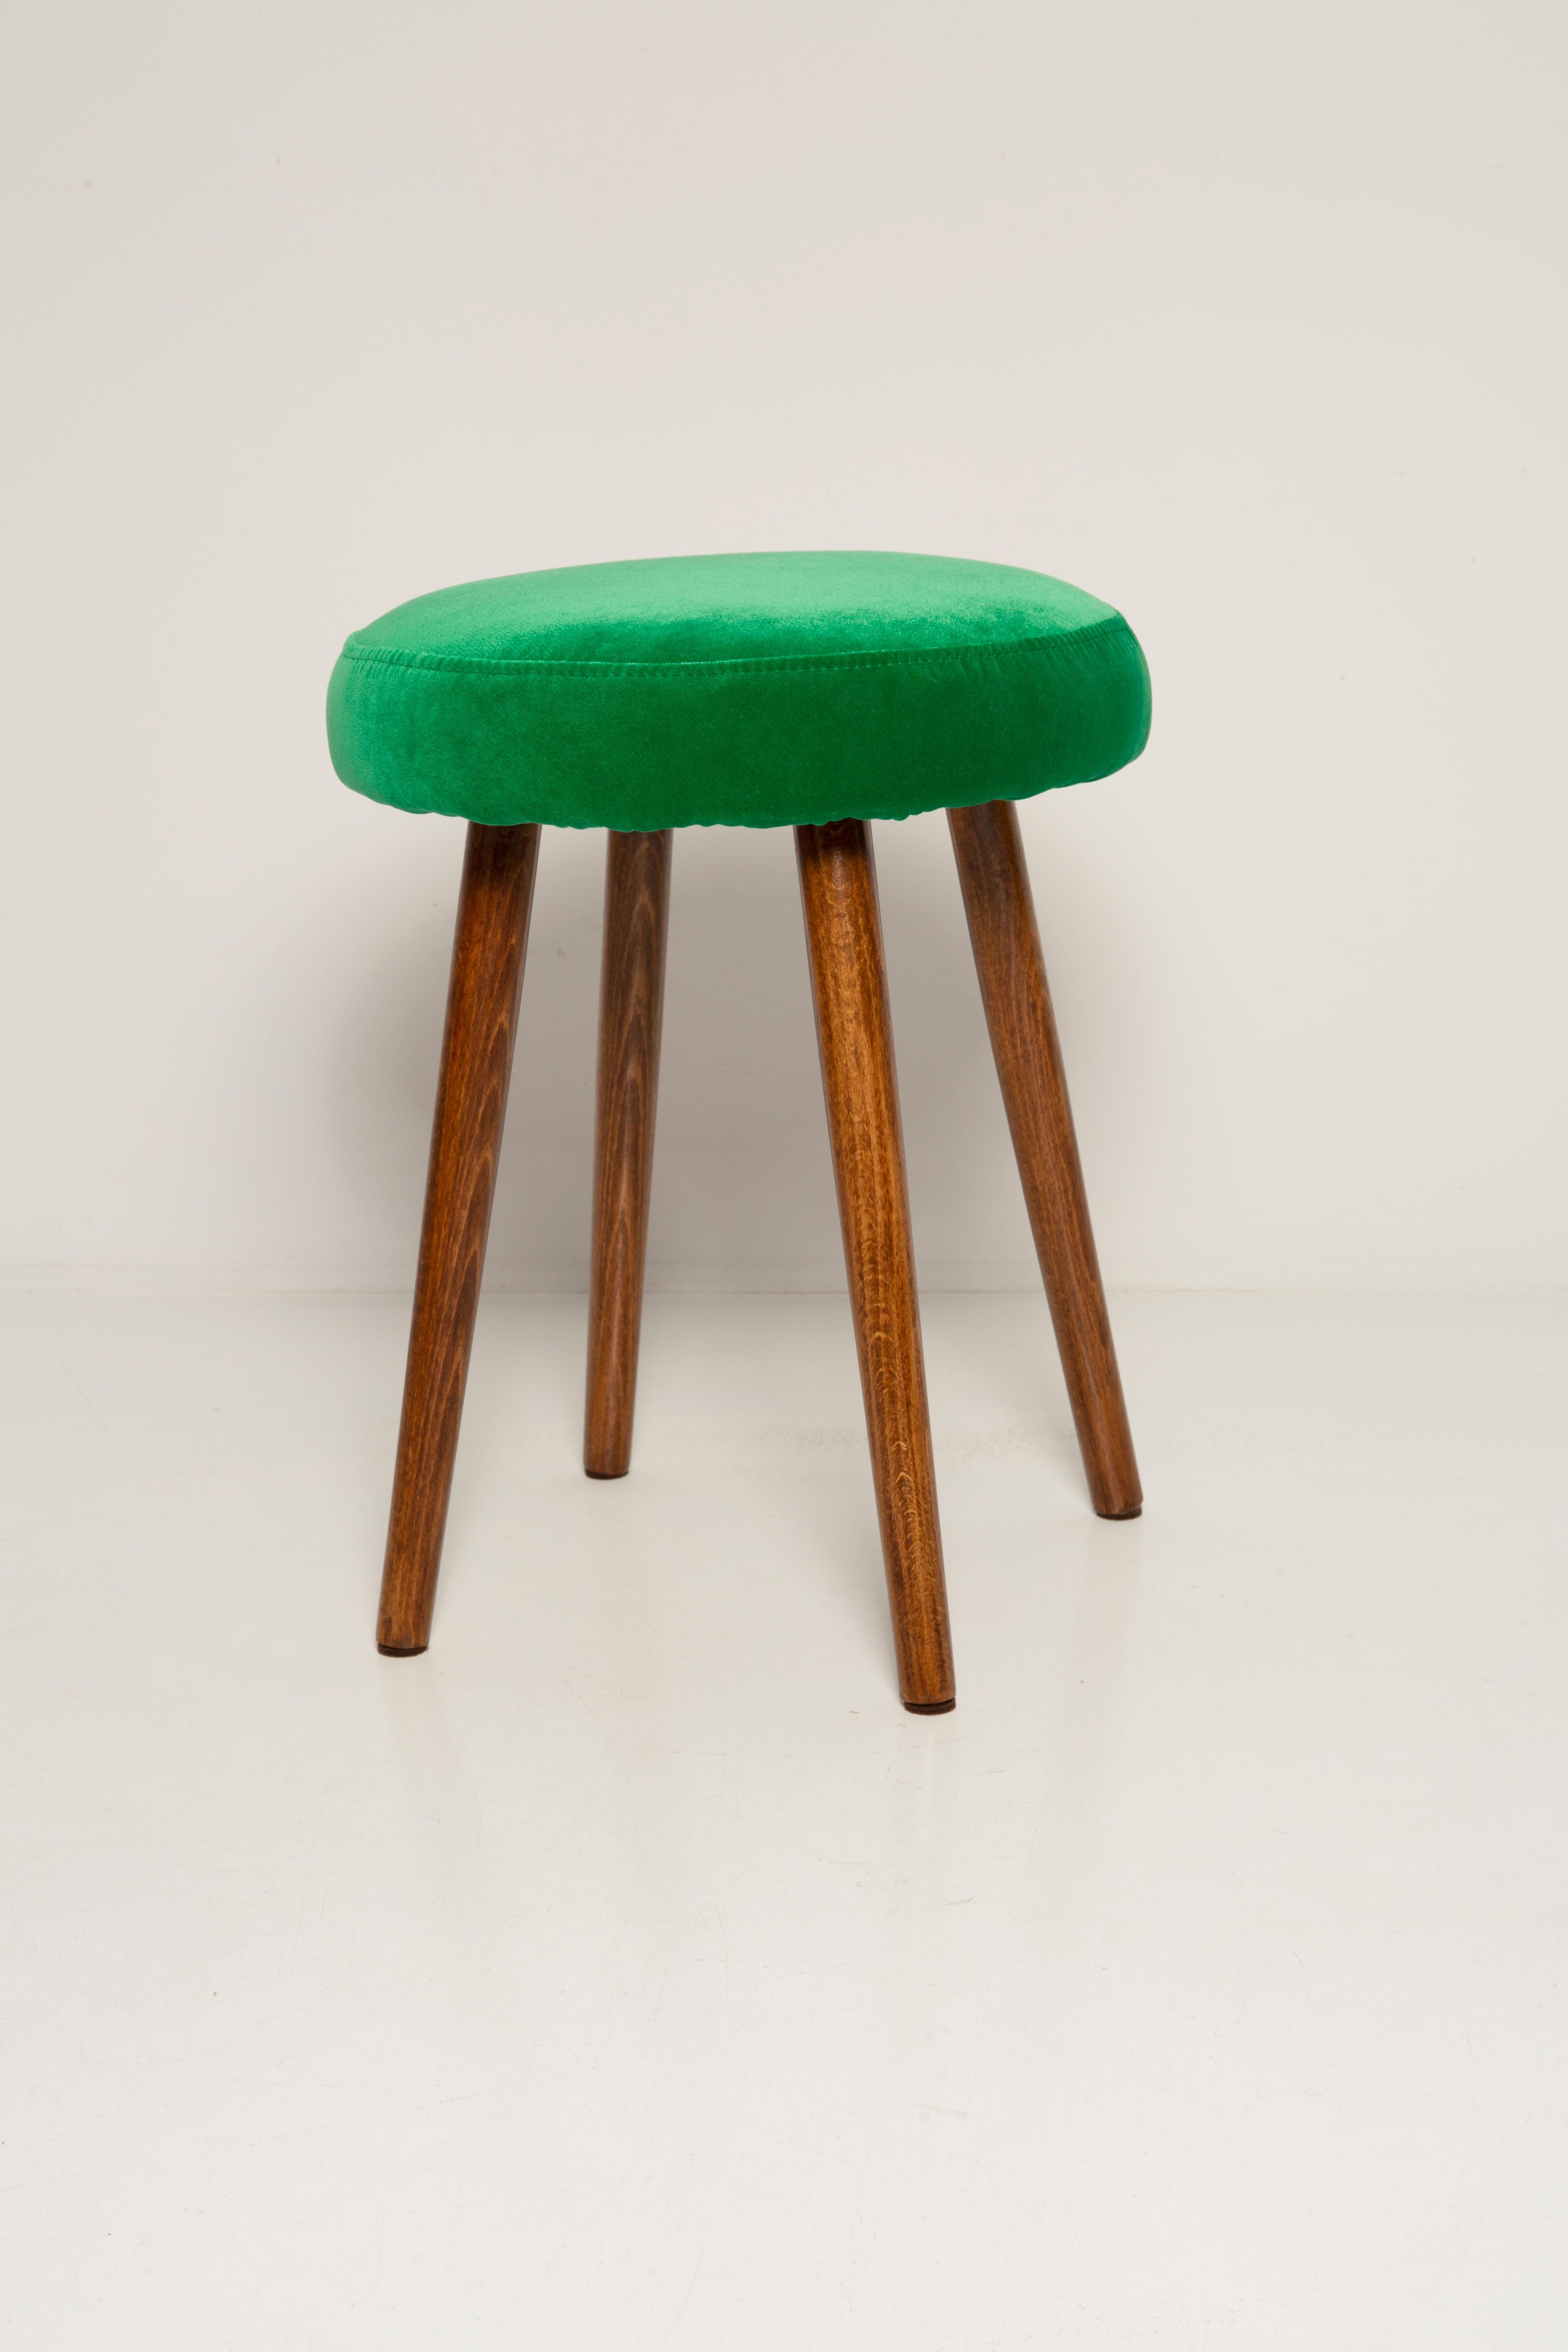 grass green stool